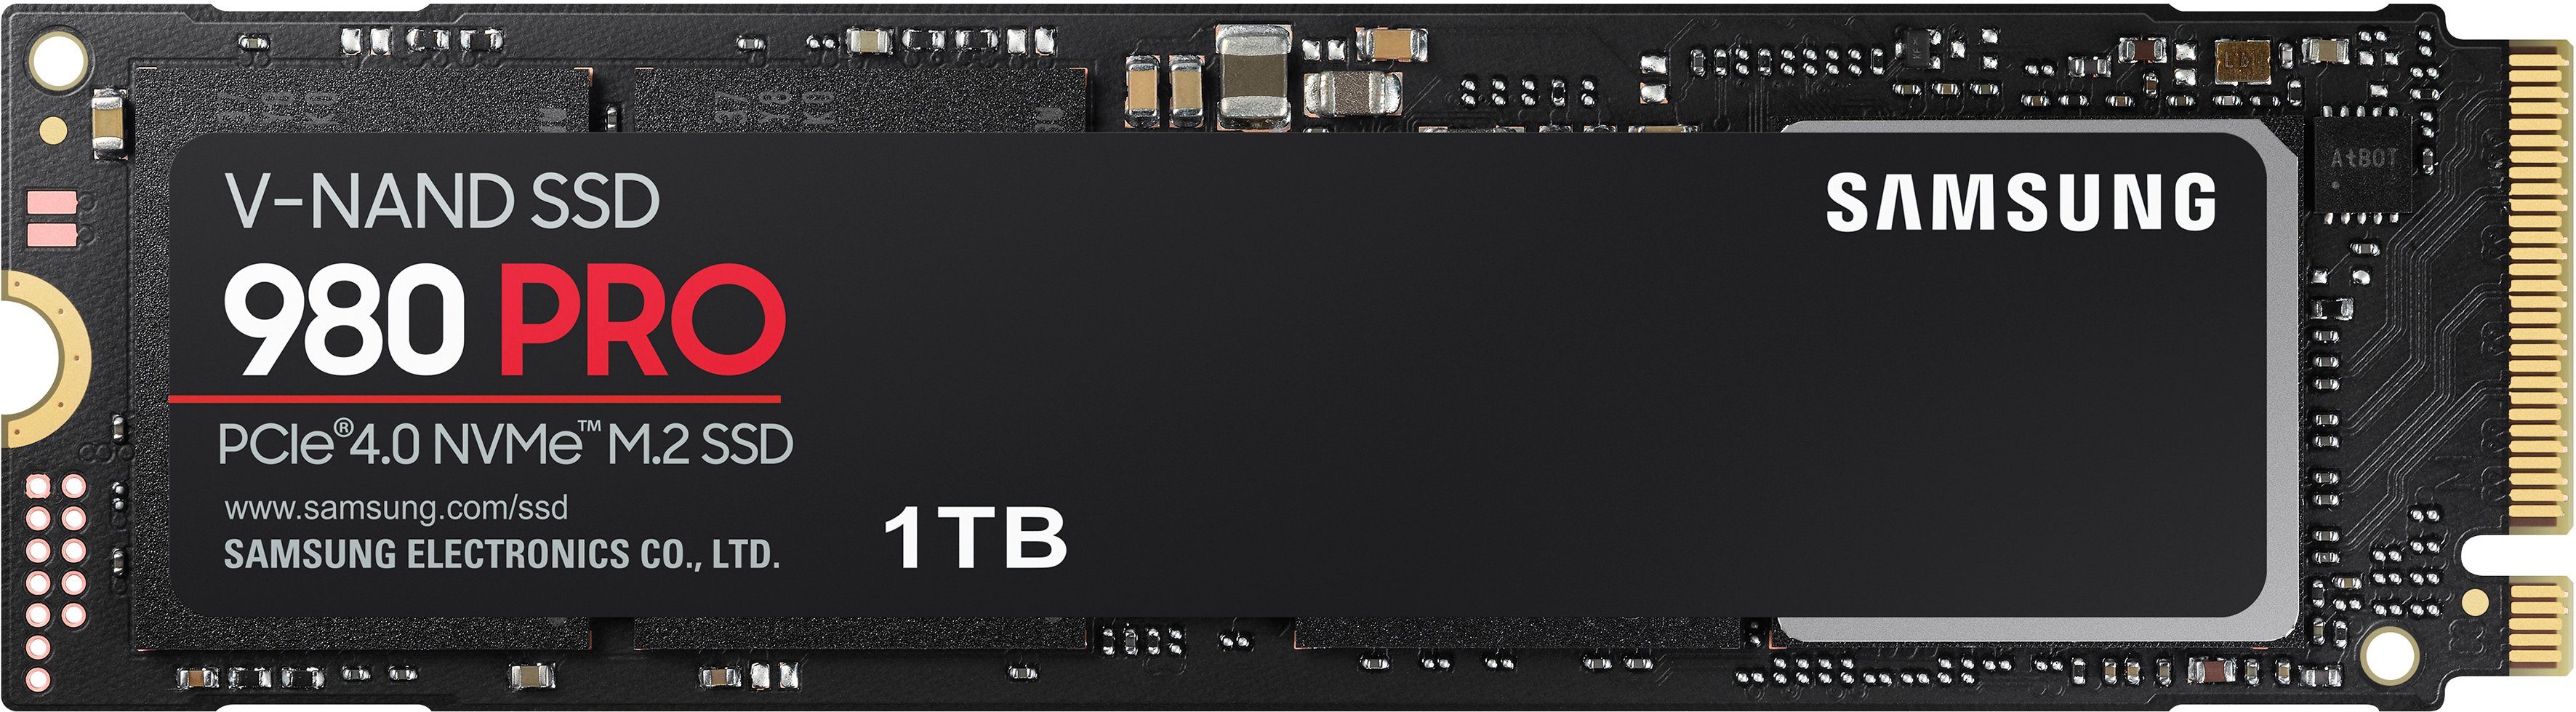 Samsung 980 PRO interne SSD (1 TB) 7000 MB/S Lesegeschwindigkeit, 5000 MB/S  Schreibgeschwindigkeit, Playstation